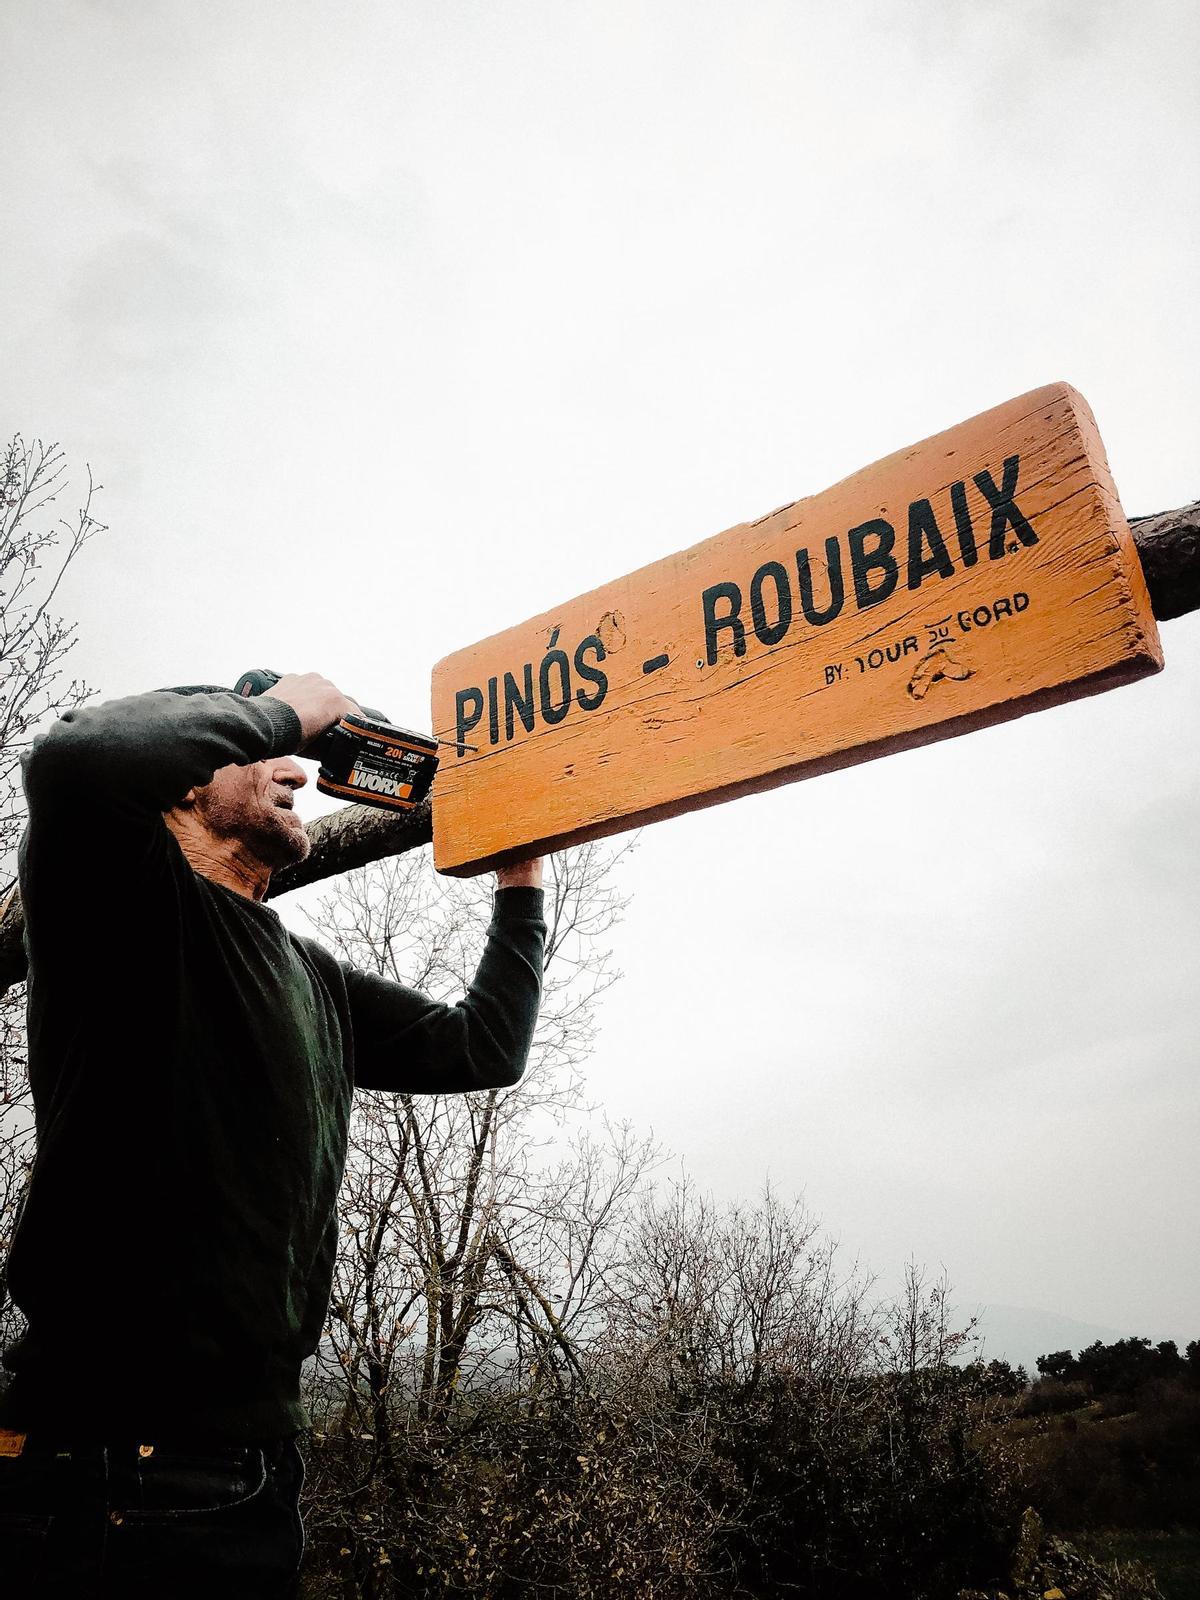 Un dels voluntaris posa a punt el r`tol de la Clàssica Pinós - Roubaix